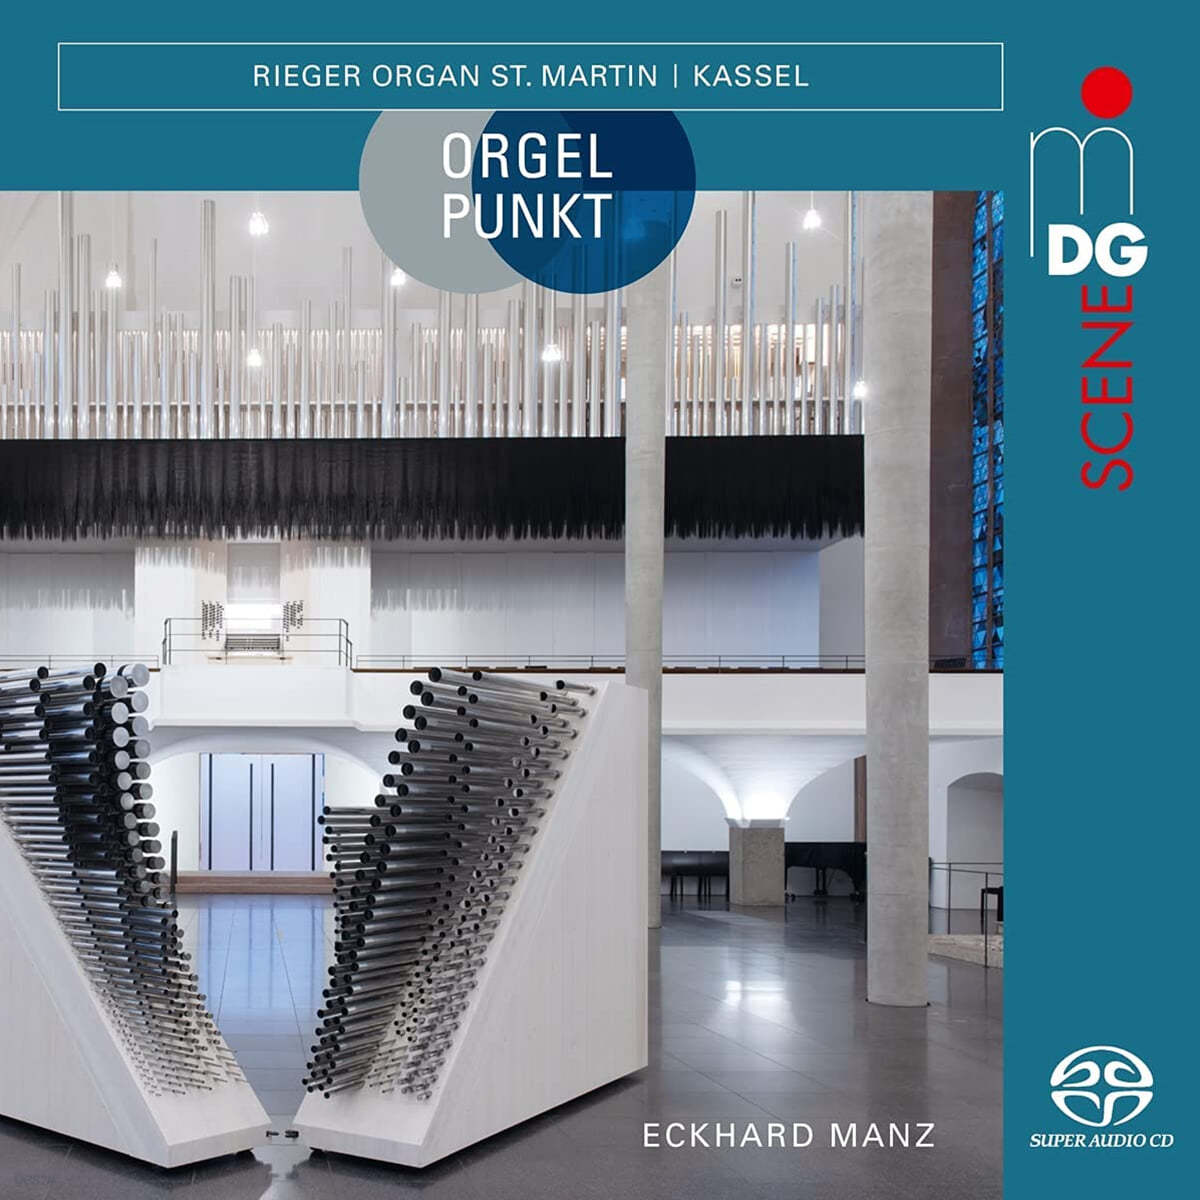 Eckhard Manz 오르간 작품 모음집 - 카베존, 바흐, 권깃비 (Orgelpunkt: the Rieger Organs St. Martin Kassel)